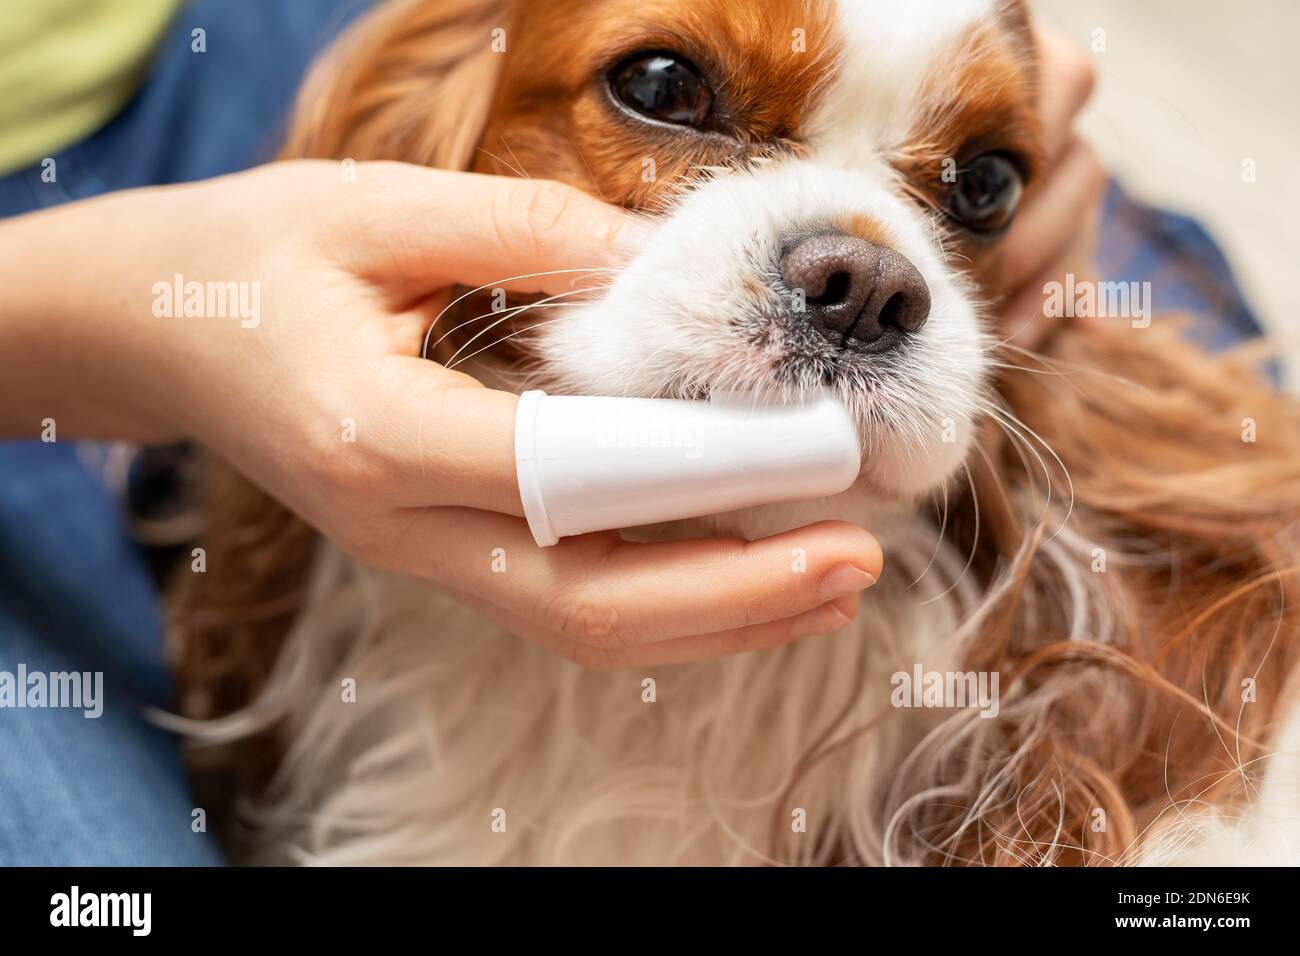 Home Reinigung der Zähne Cute Dog Cavalier King Charles Spaniel. Pflege des Tieres. Nahaufnahme Stockfoto